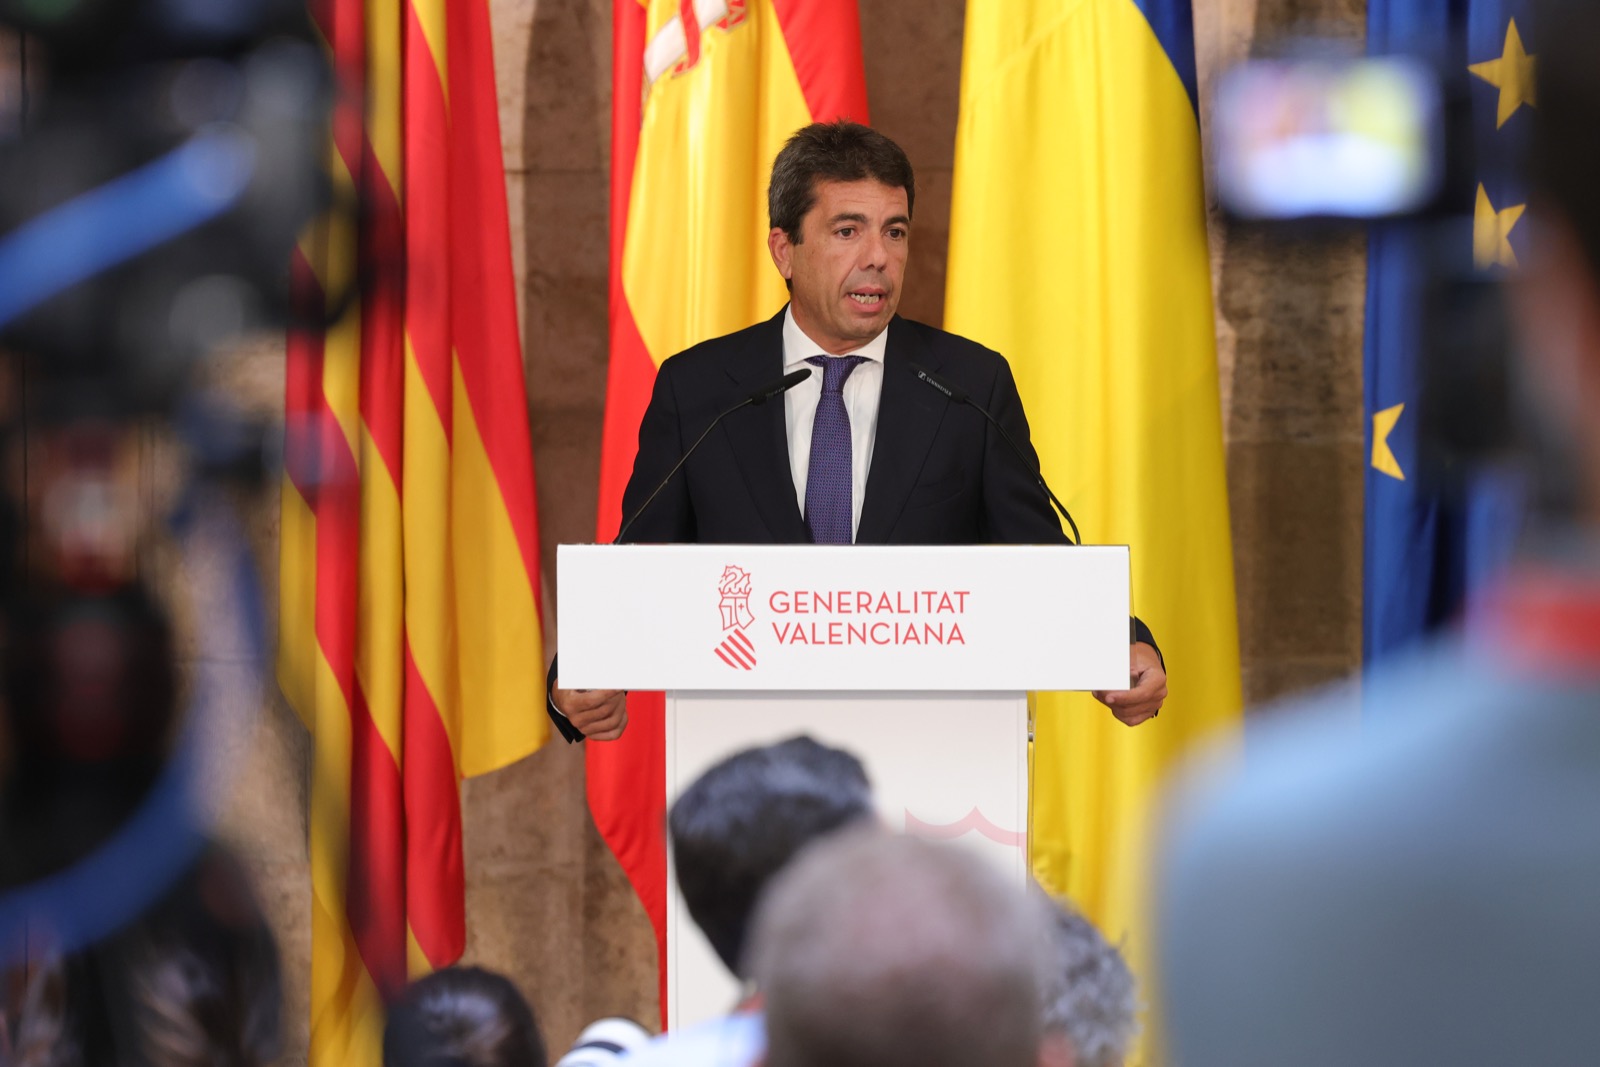 El nuevo presidente de la Comunidad Valenciana en una rueda de prensa anunciando a su equipo de gobierno